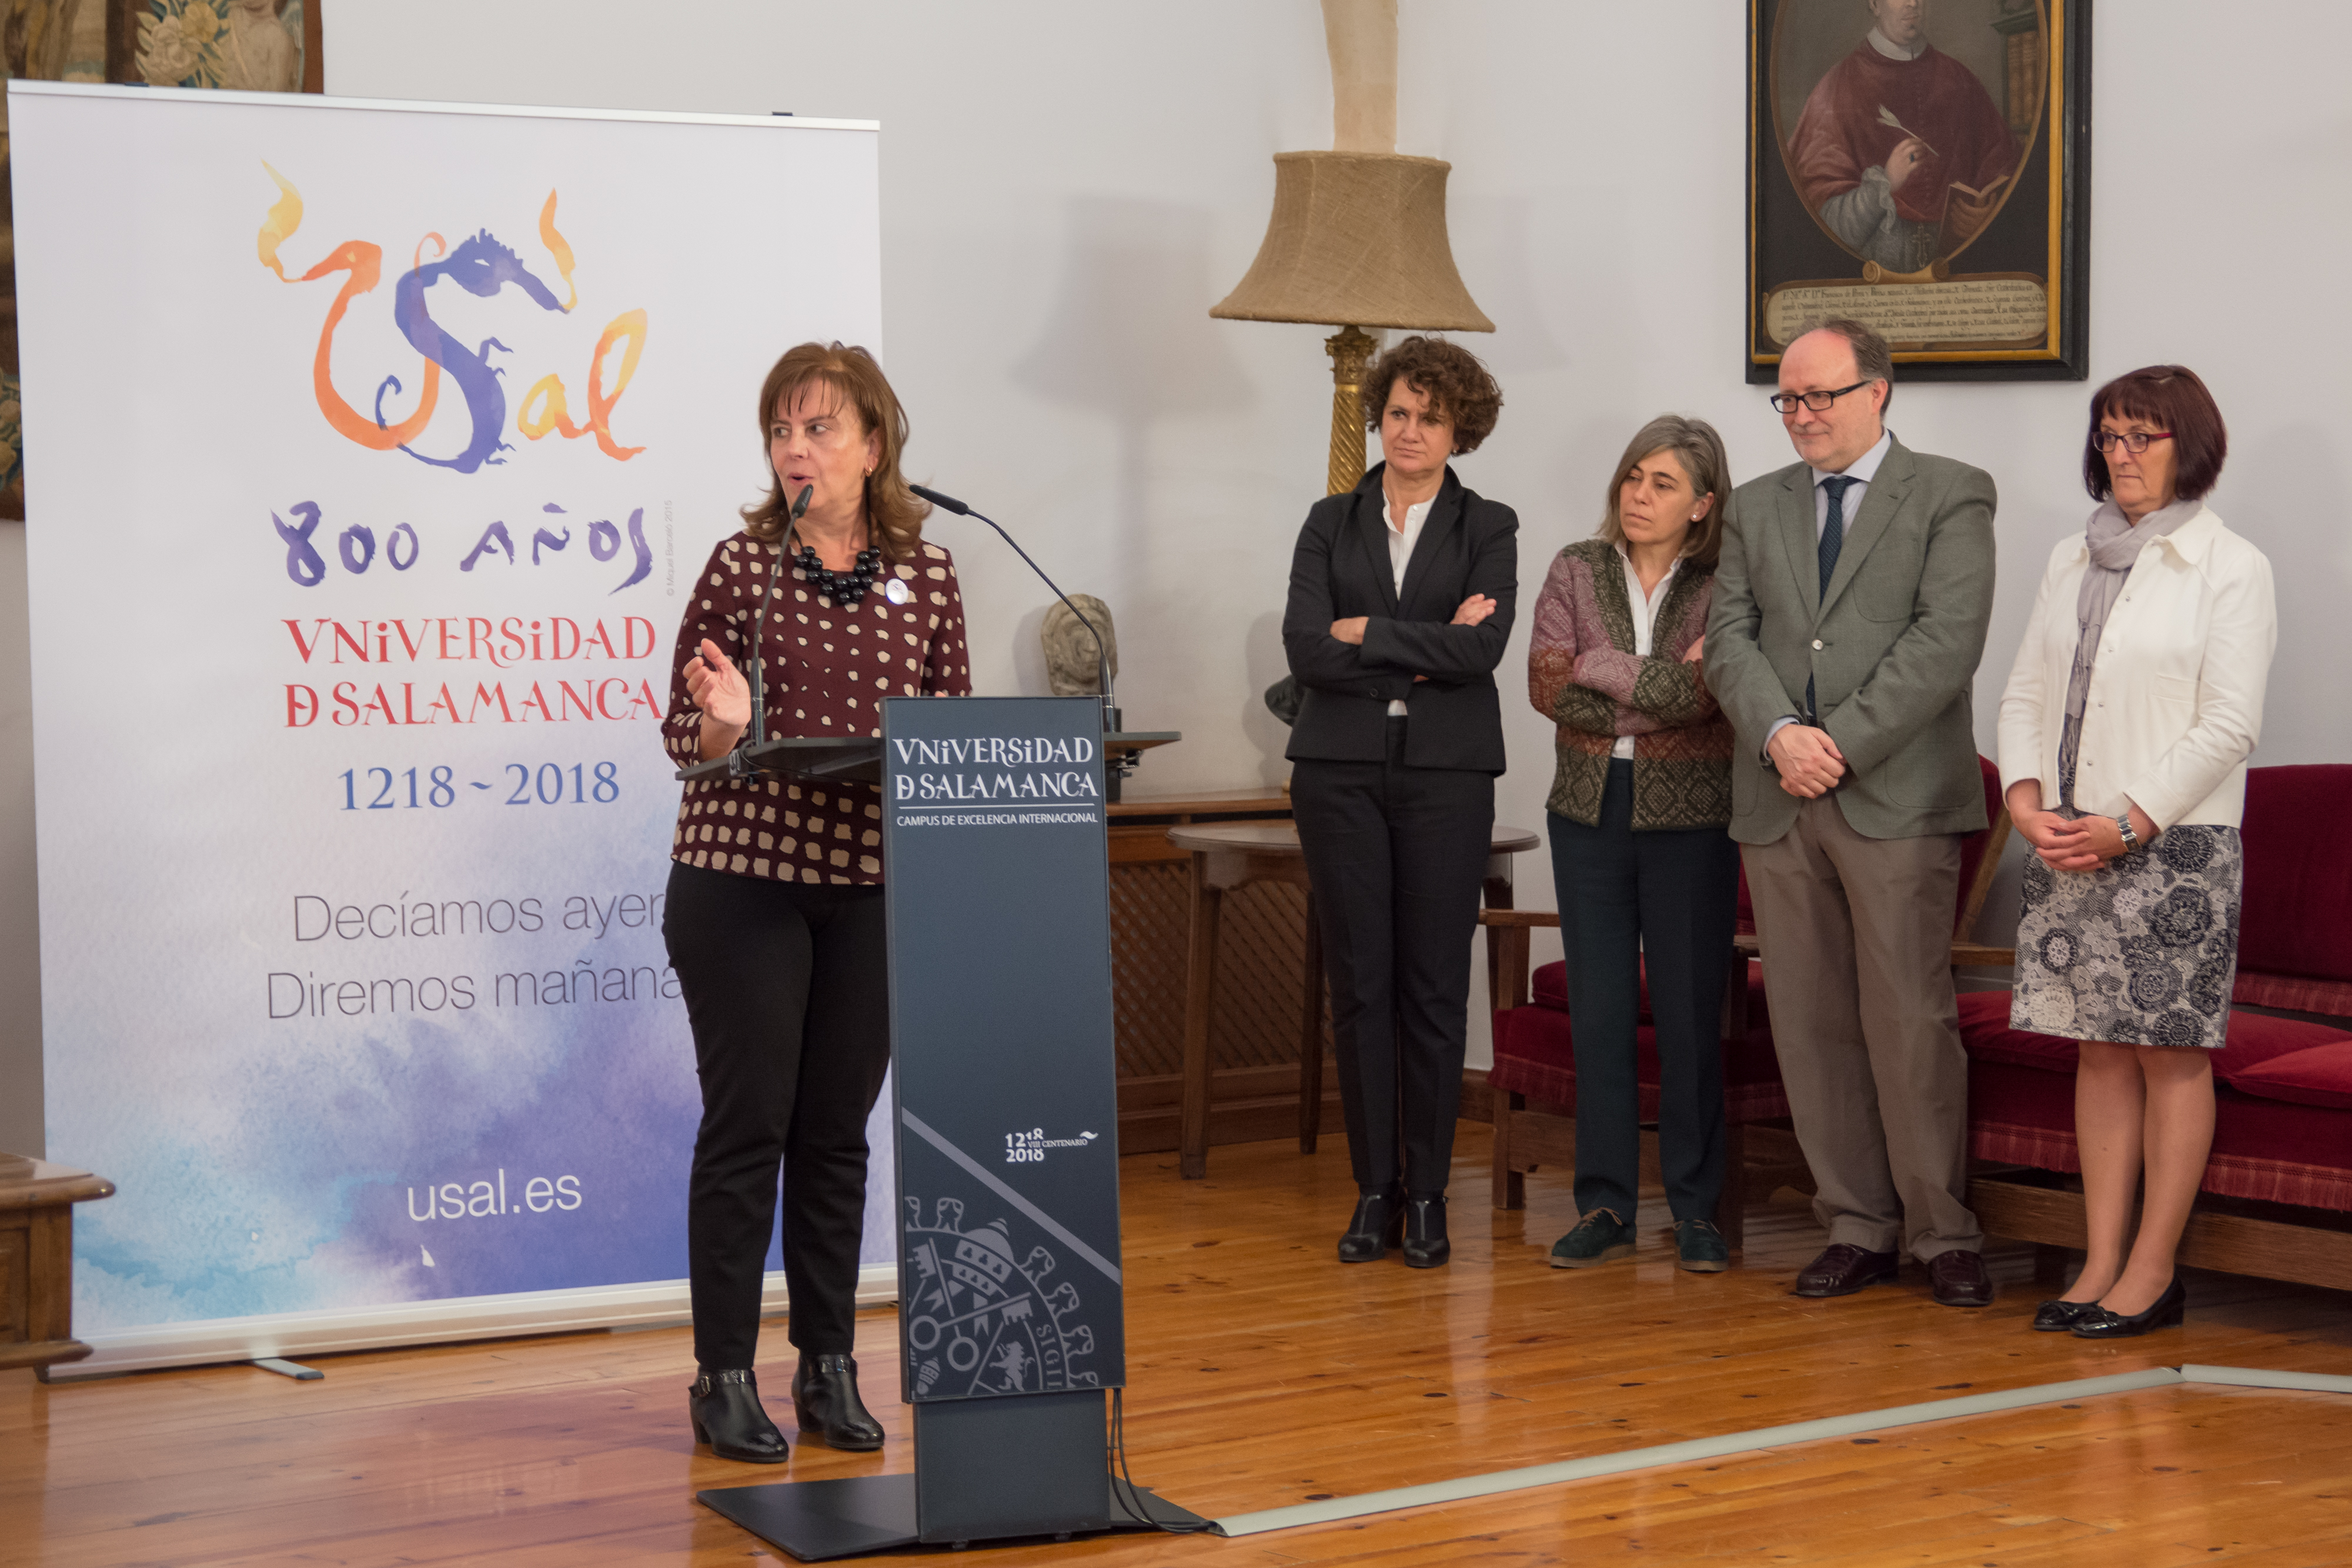 La Universidad de Salamanca incorpora el Centro Internacional de Referencia del Español a sus proyectos del VIII Centenario